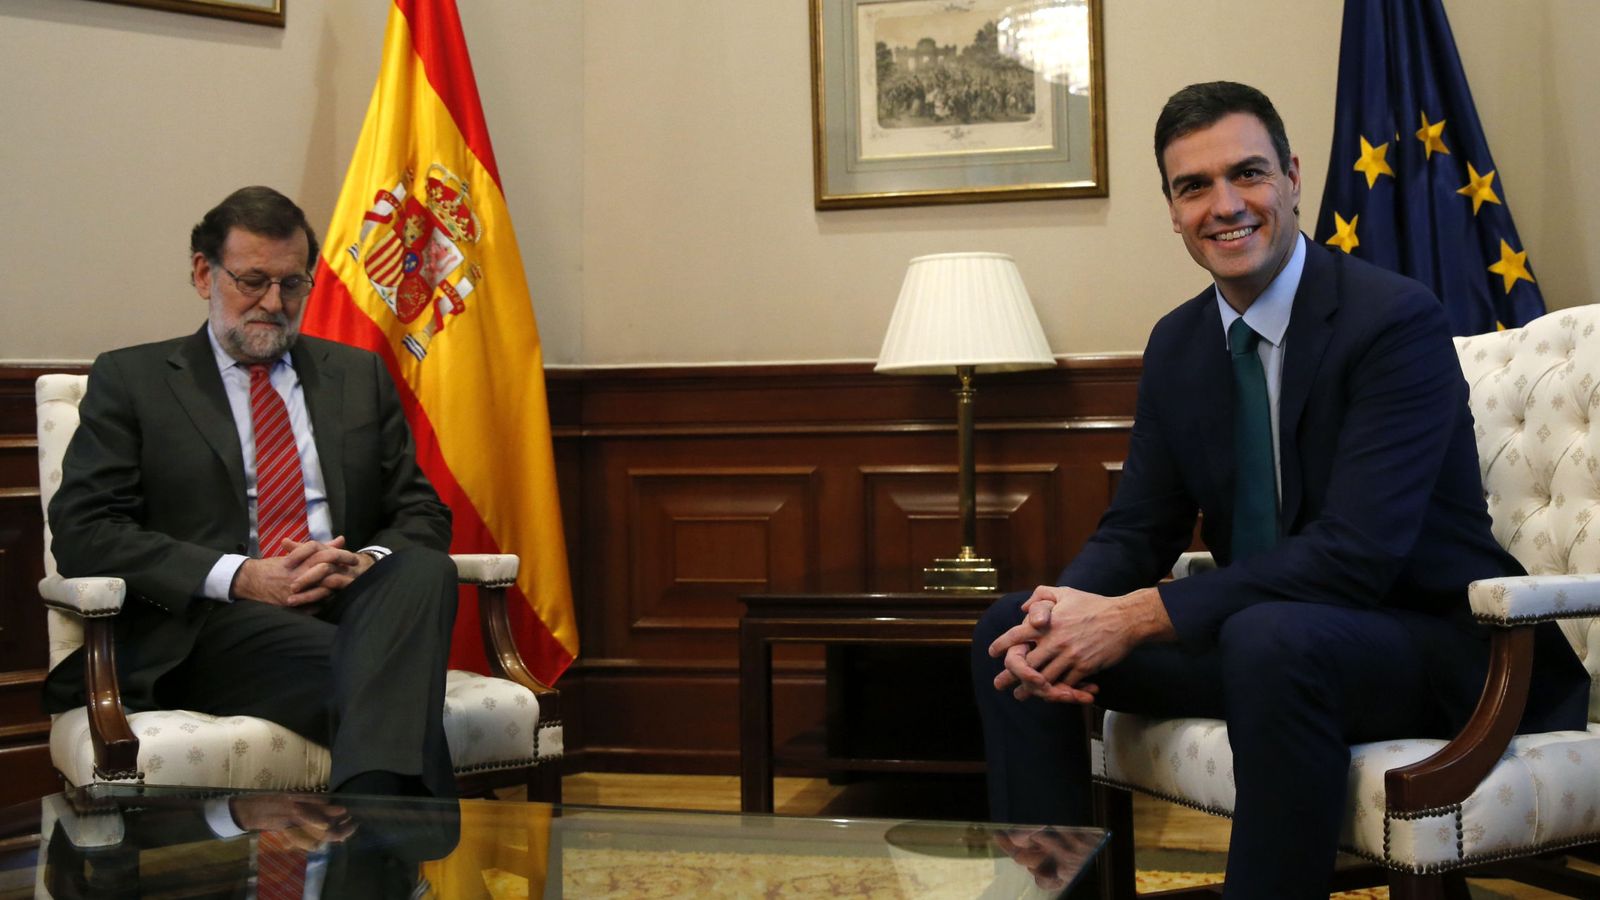 Foto: El presidente del Gobierno en funciones, Mariano Rajoy, y el líder socialista, Pedro Sánchez, durante una reunión en el Congreso. (EFE)